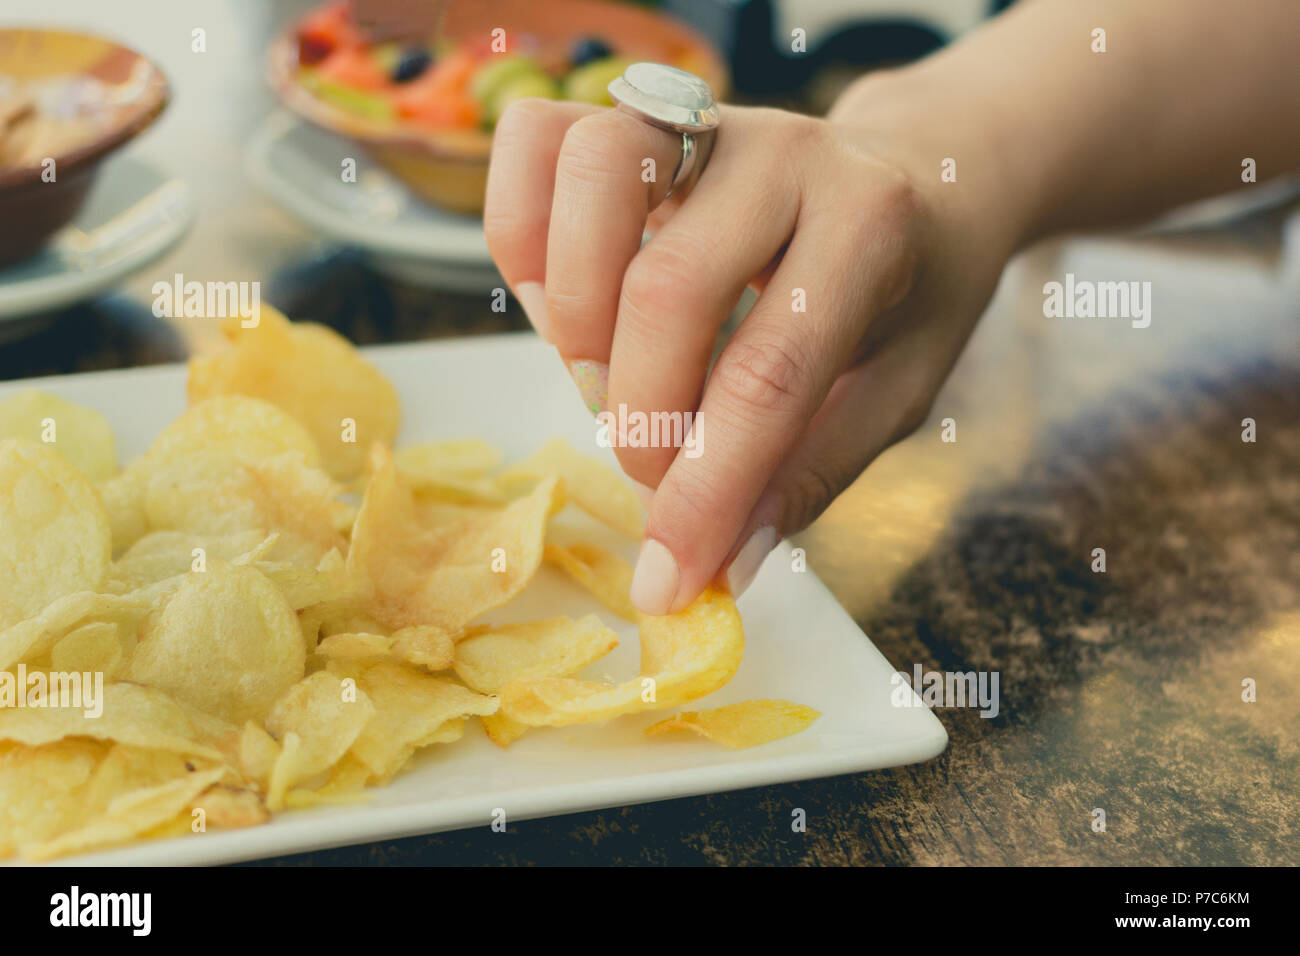 Mains d'une femme prenant une collation au cours d'une pomme de terre frite Banque D'Images